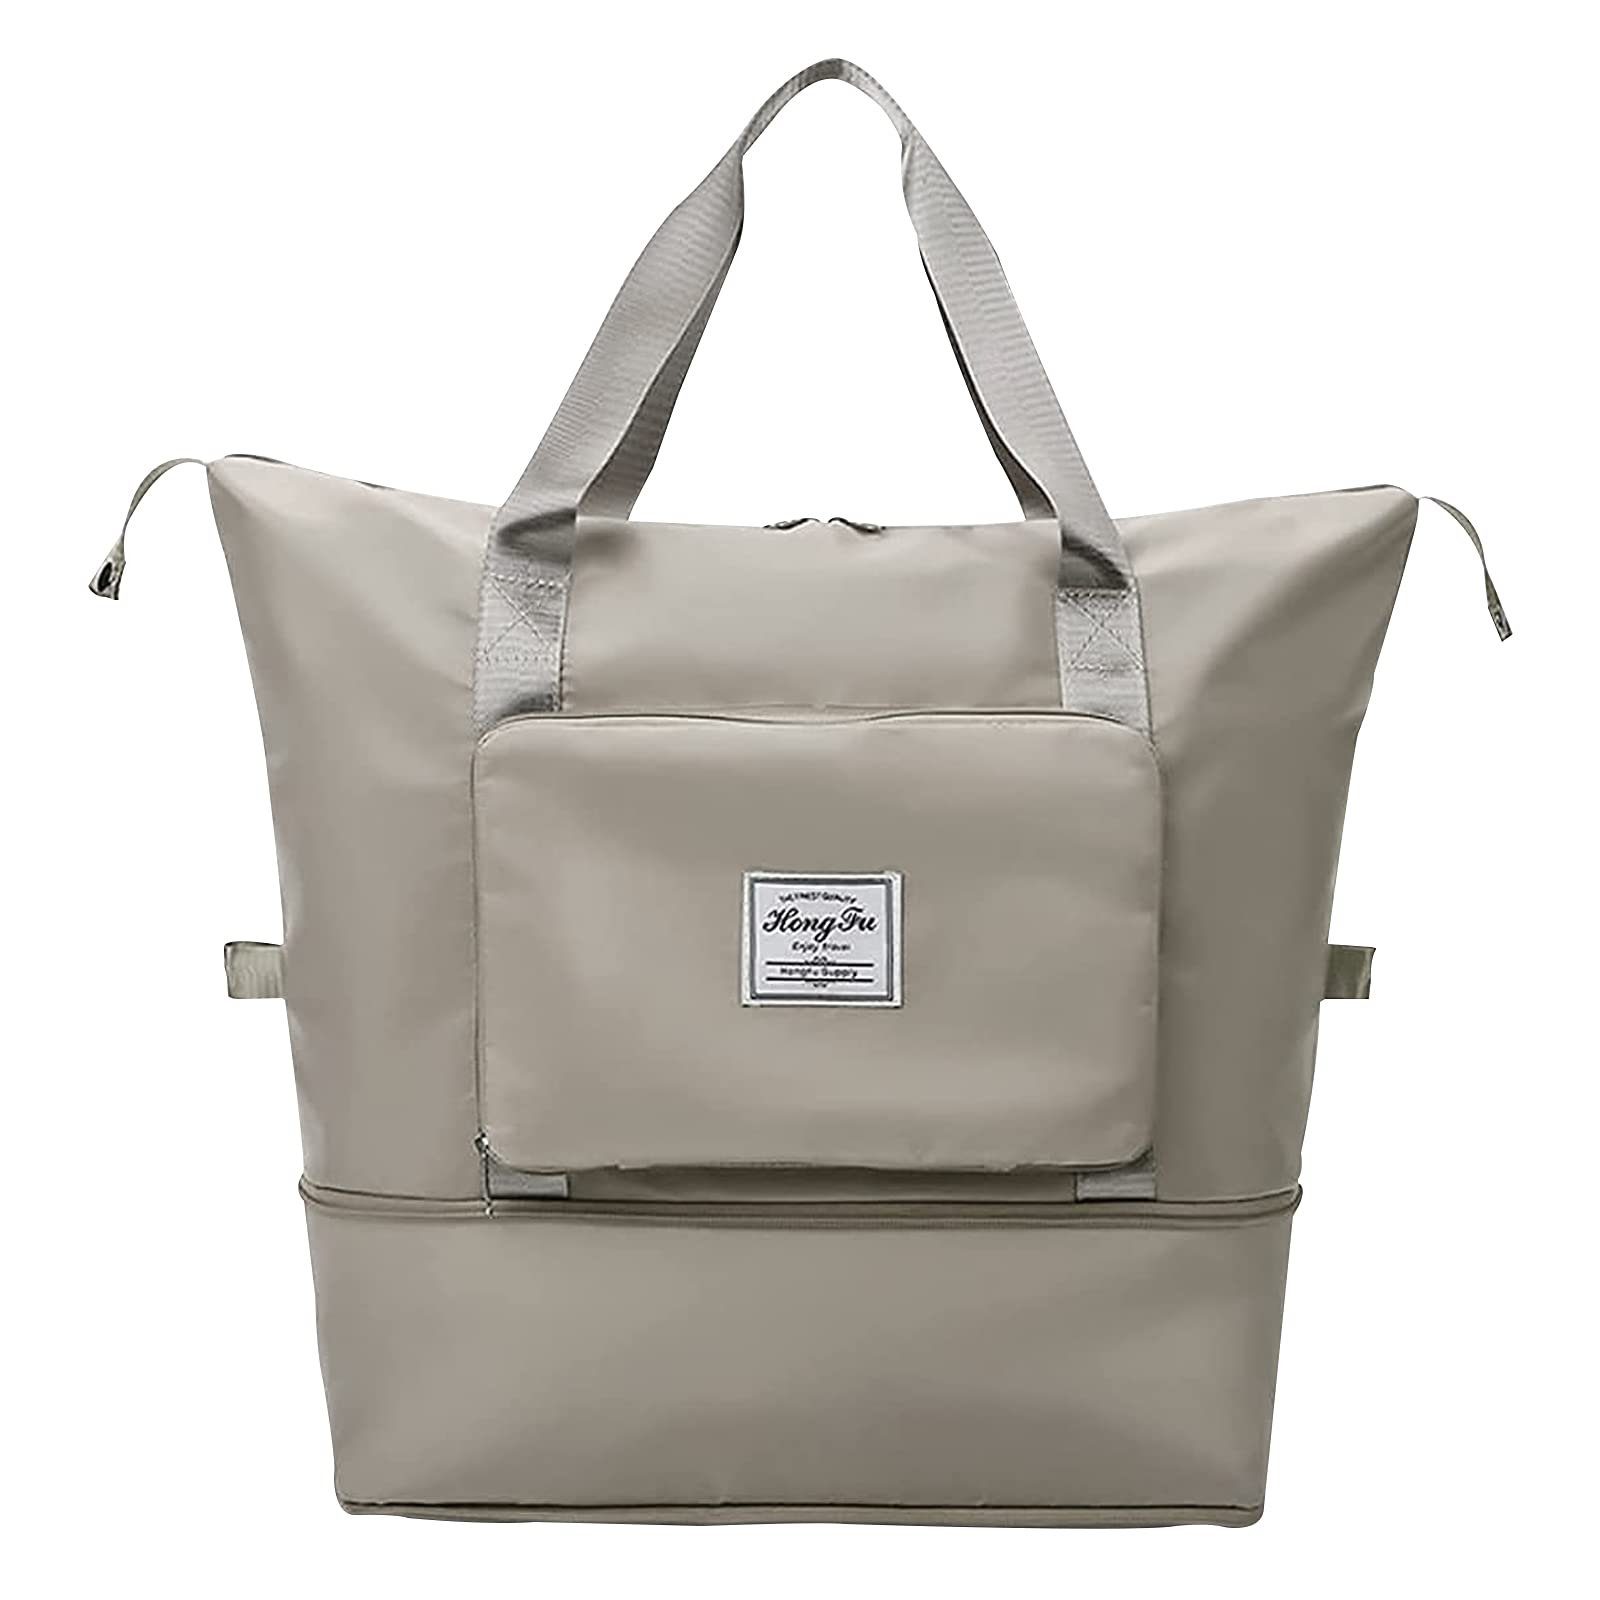 VIVIHEYDAY Reisetasche Sporttasche für Damen und Herren, faltbare Einkaufstasche, Damen-Sporttasche Grau